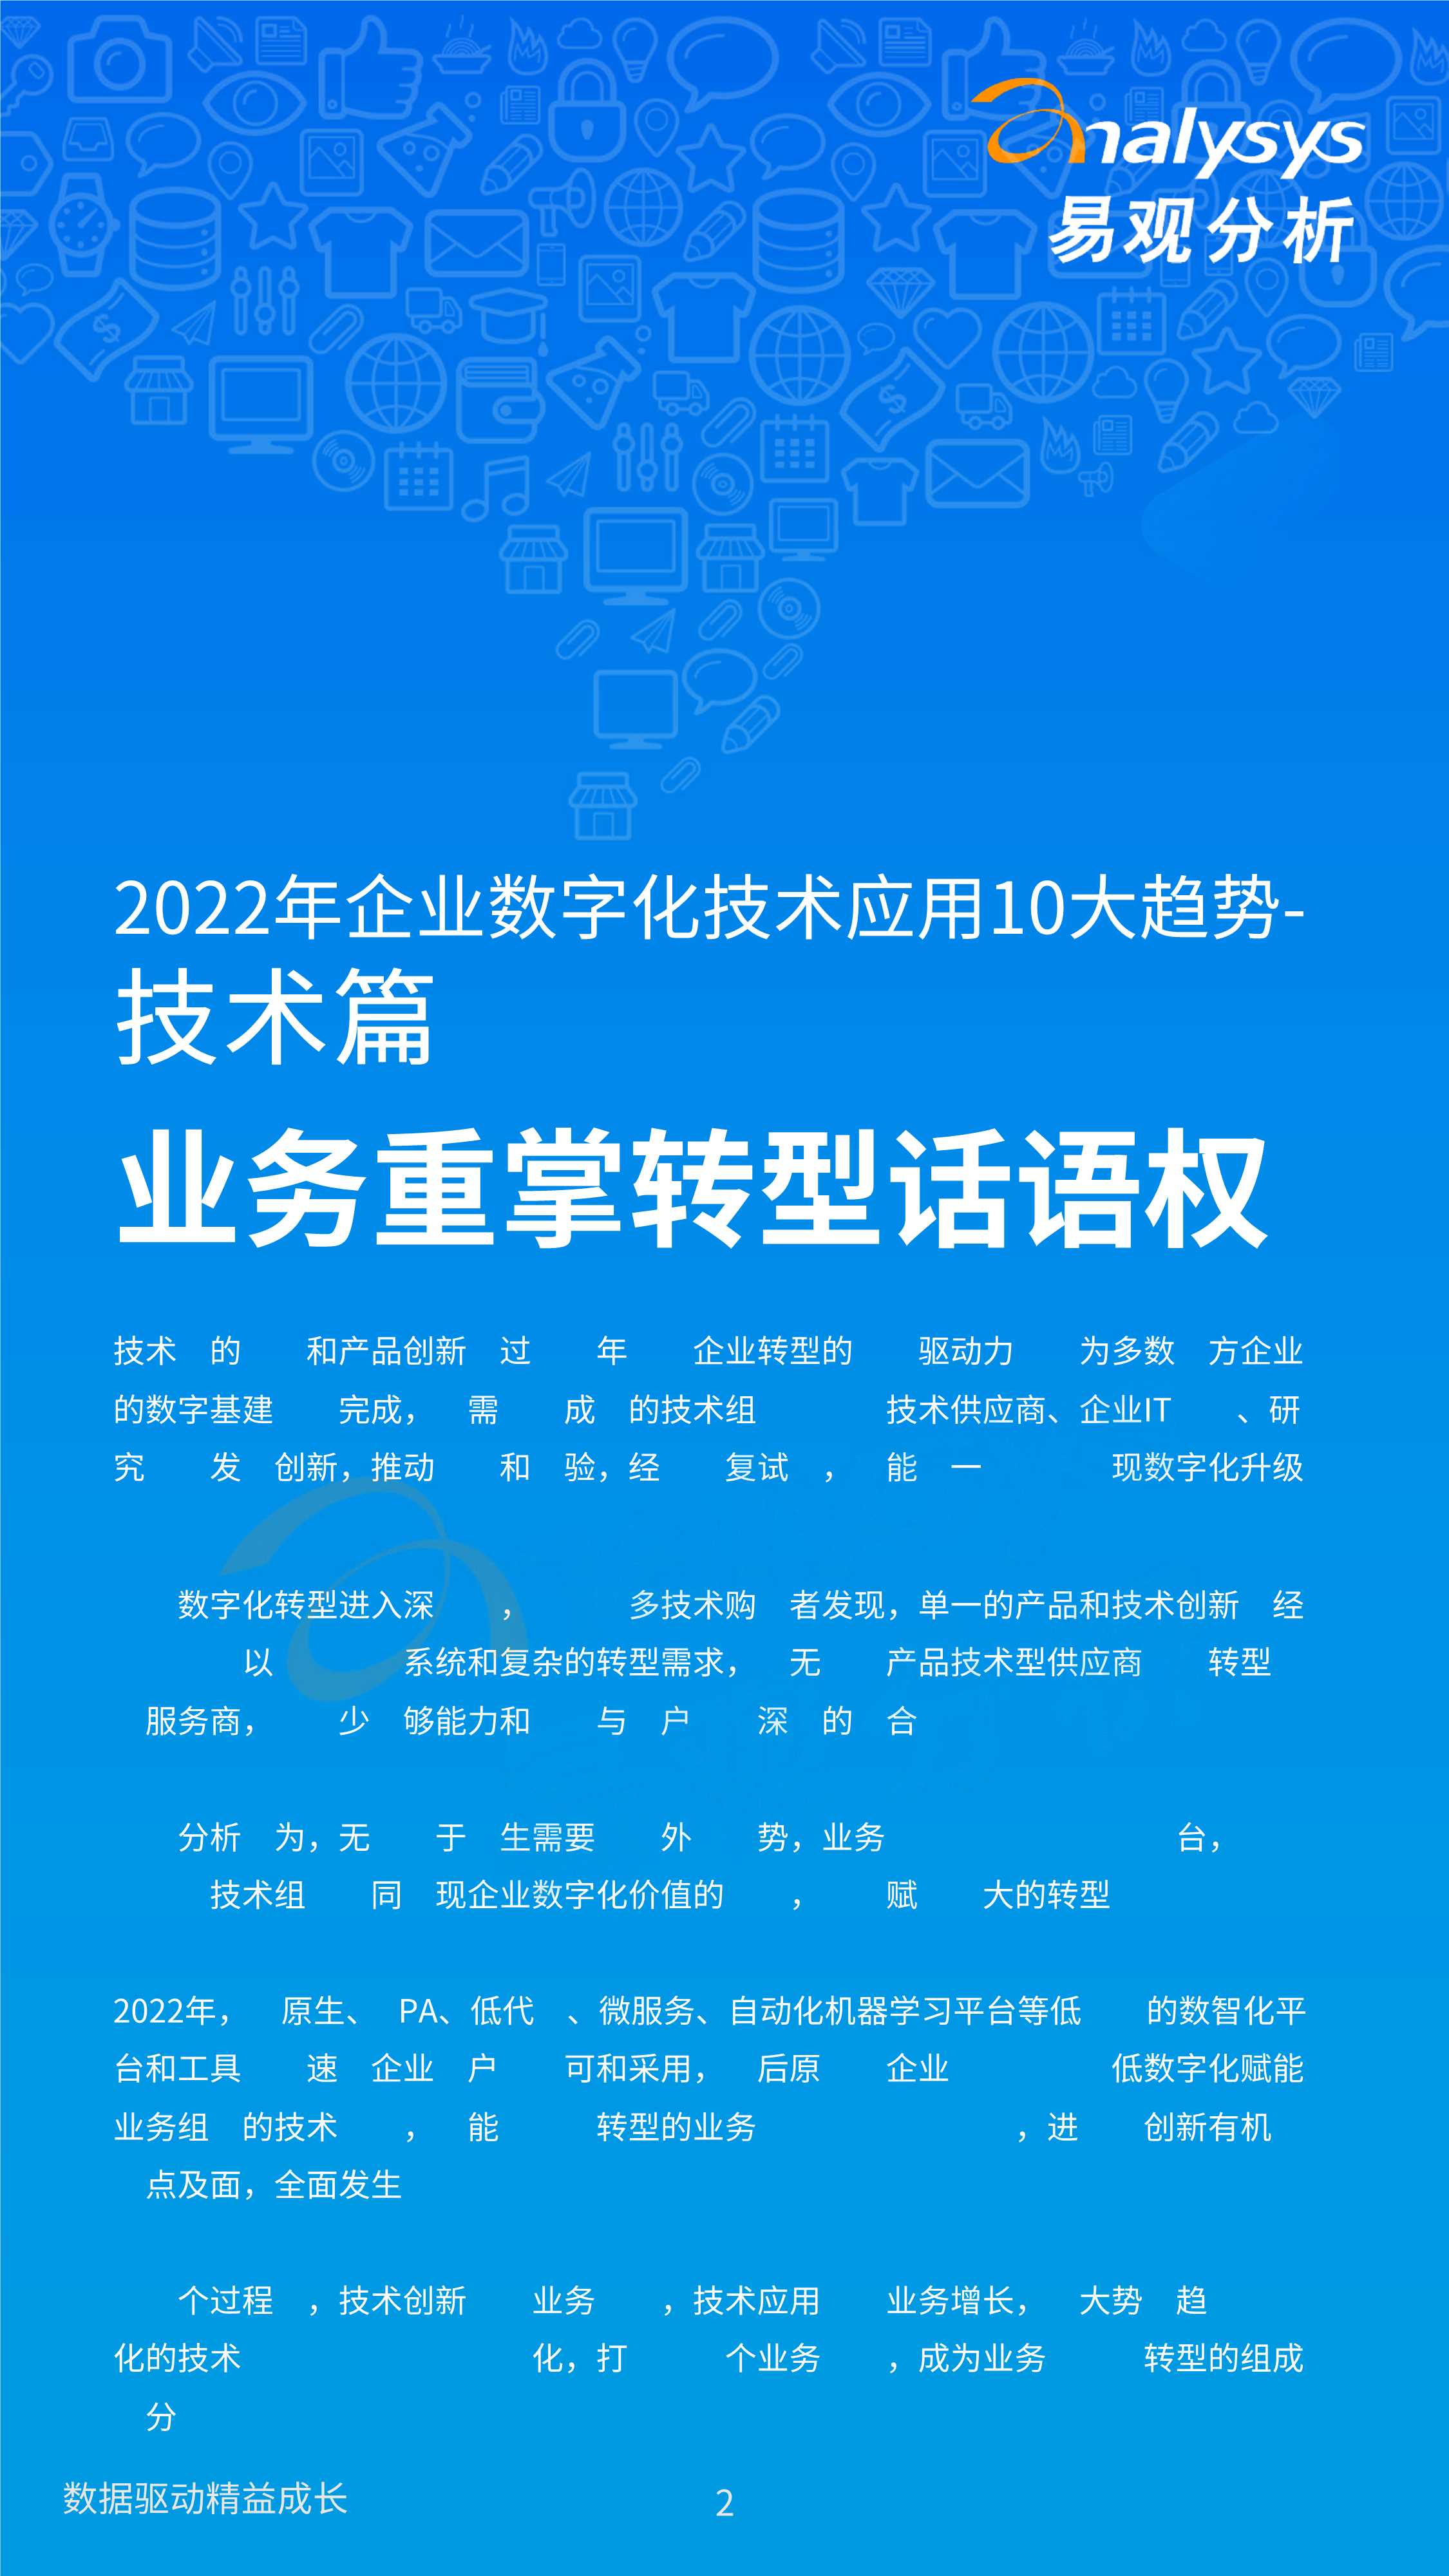 2022年企业数字化技术应用10大趋势-2022.03-18页